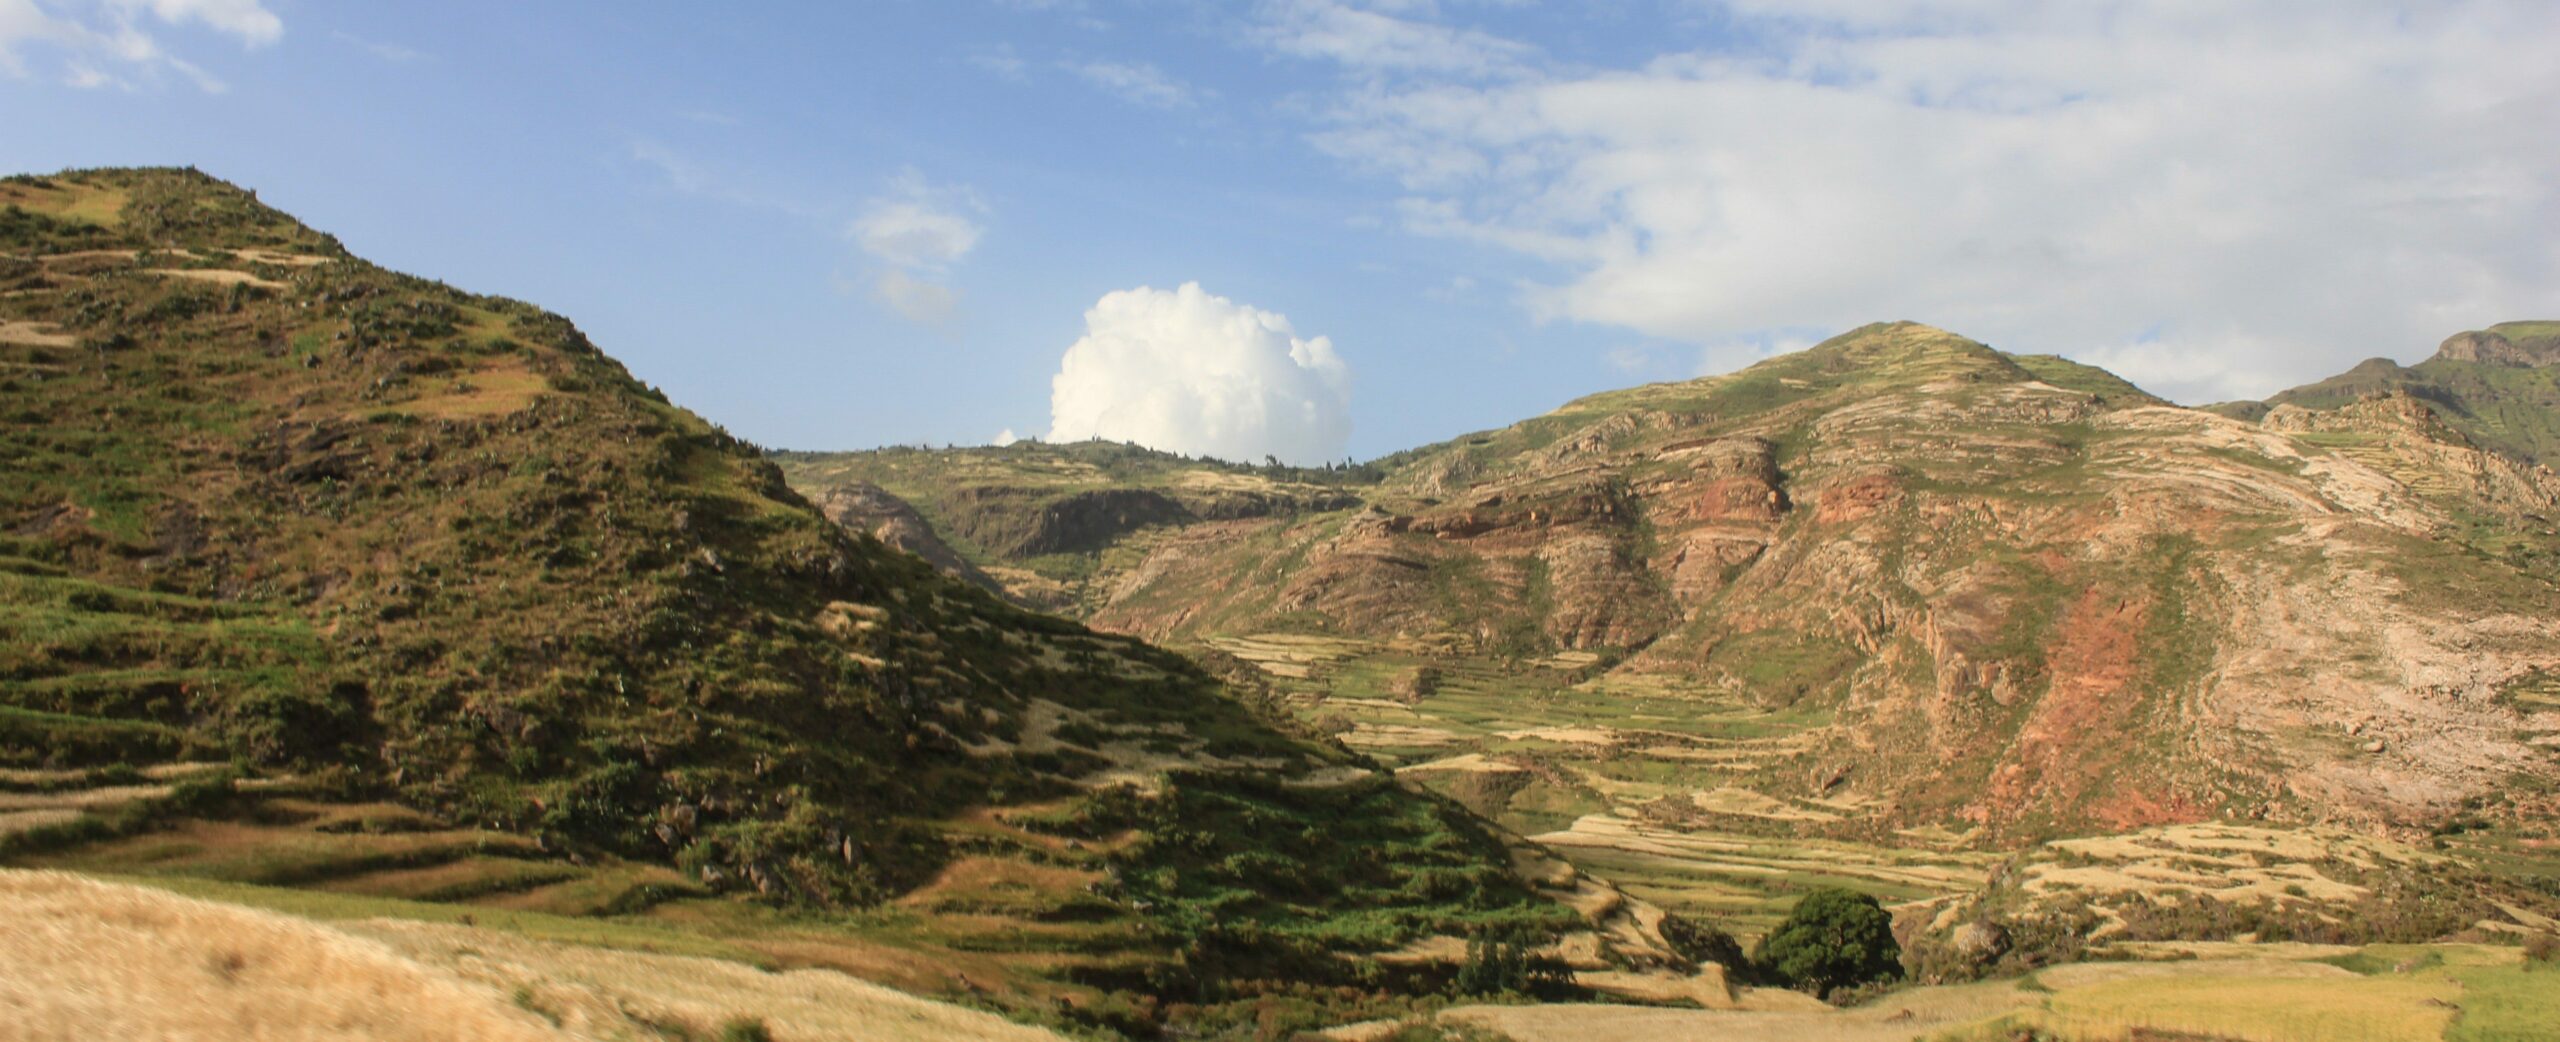 Mountainous landscape in Atsemba, Ethiopia.